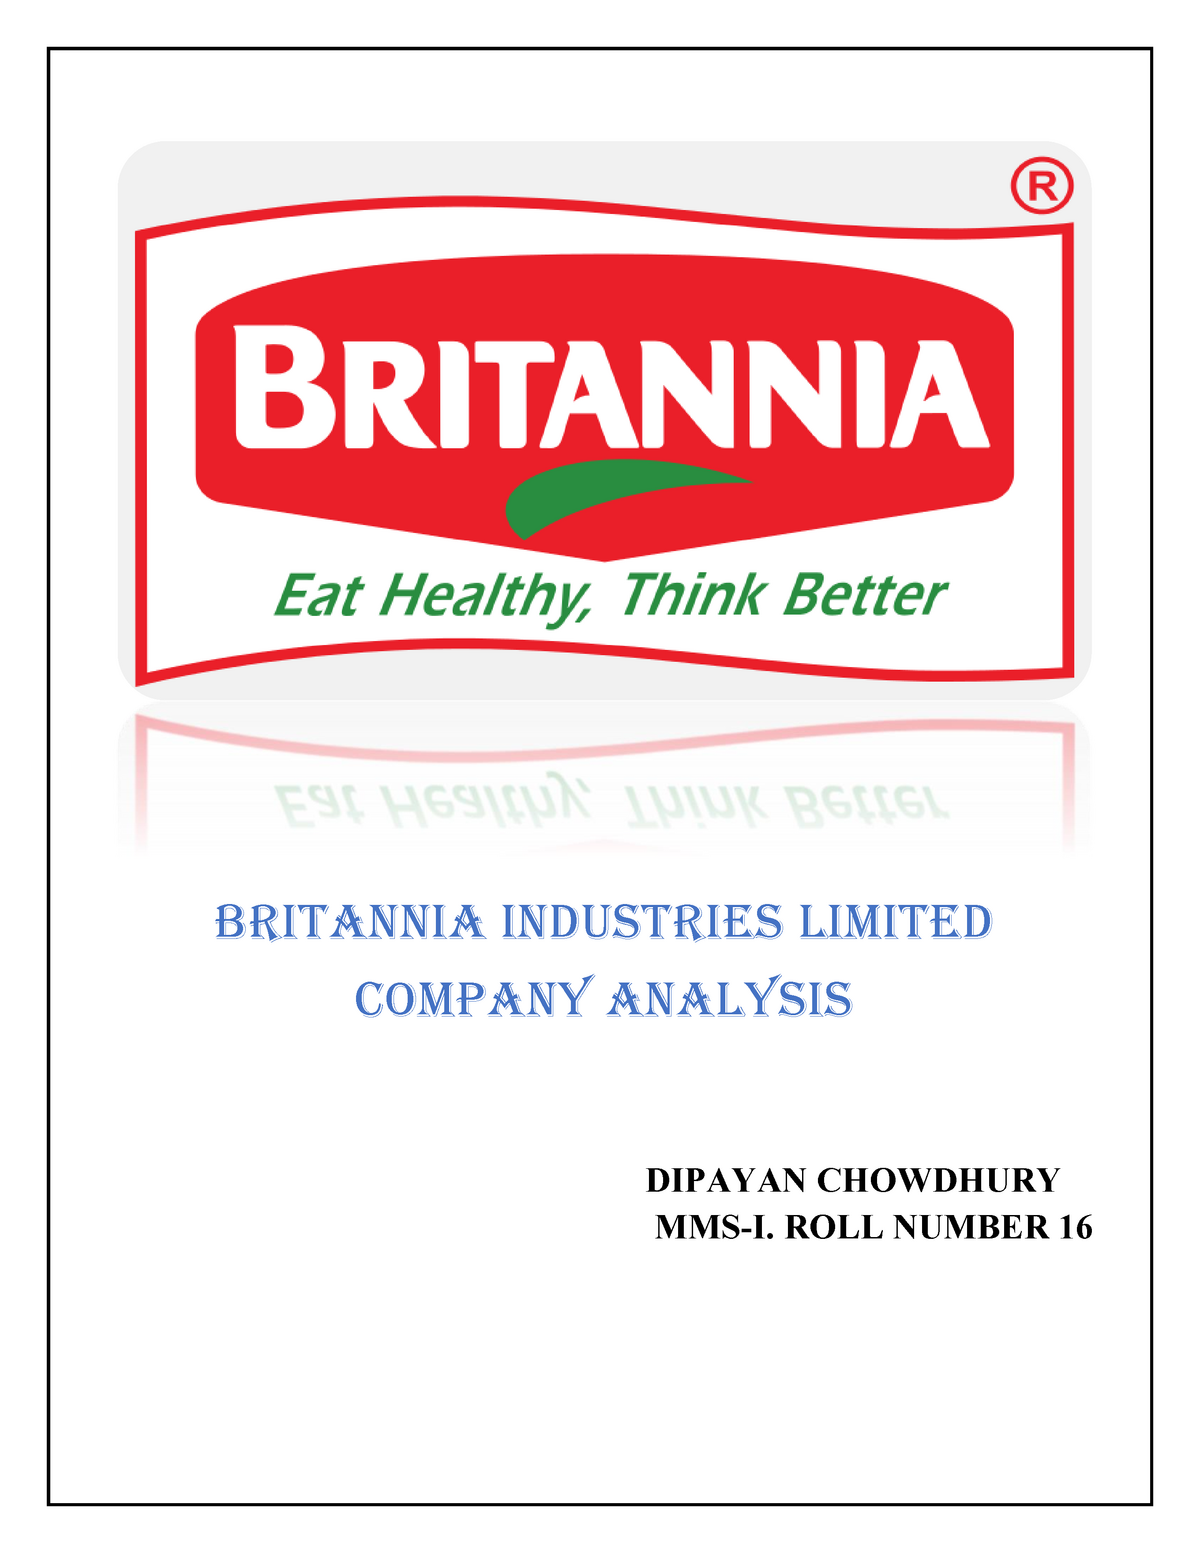 case study britannia company